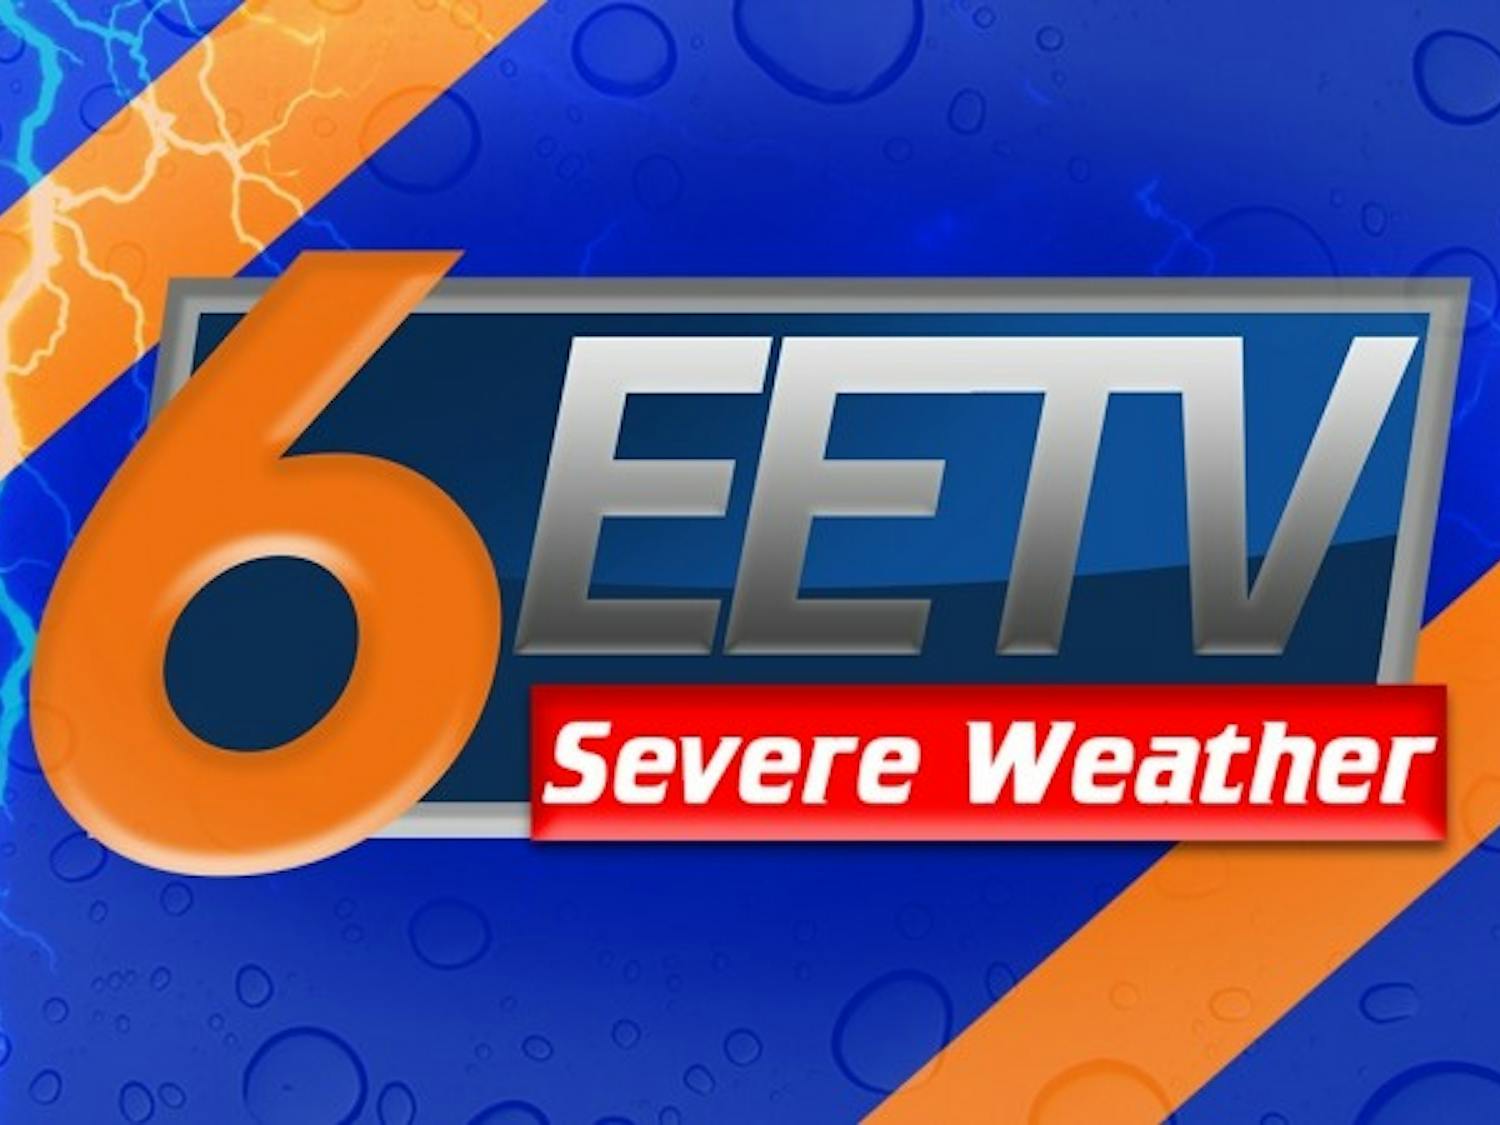 EETV Severe Weather.​